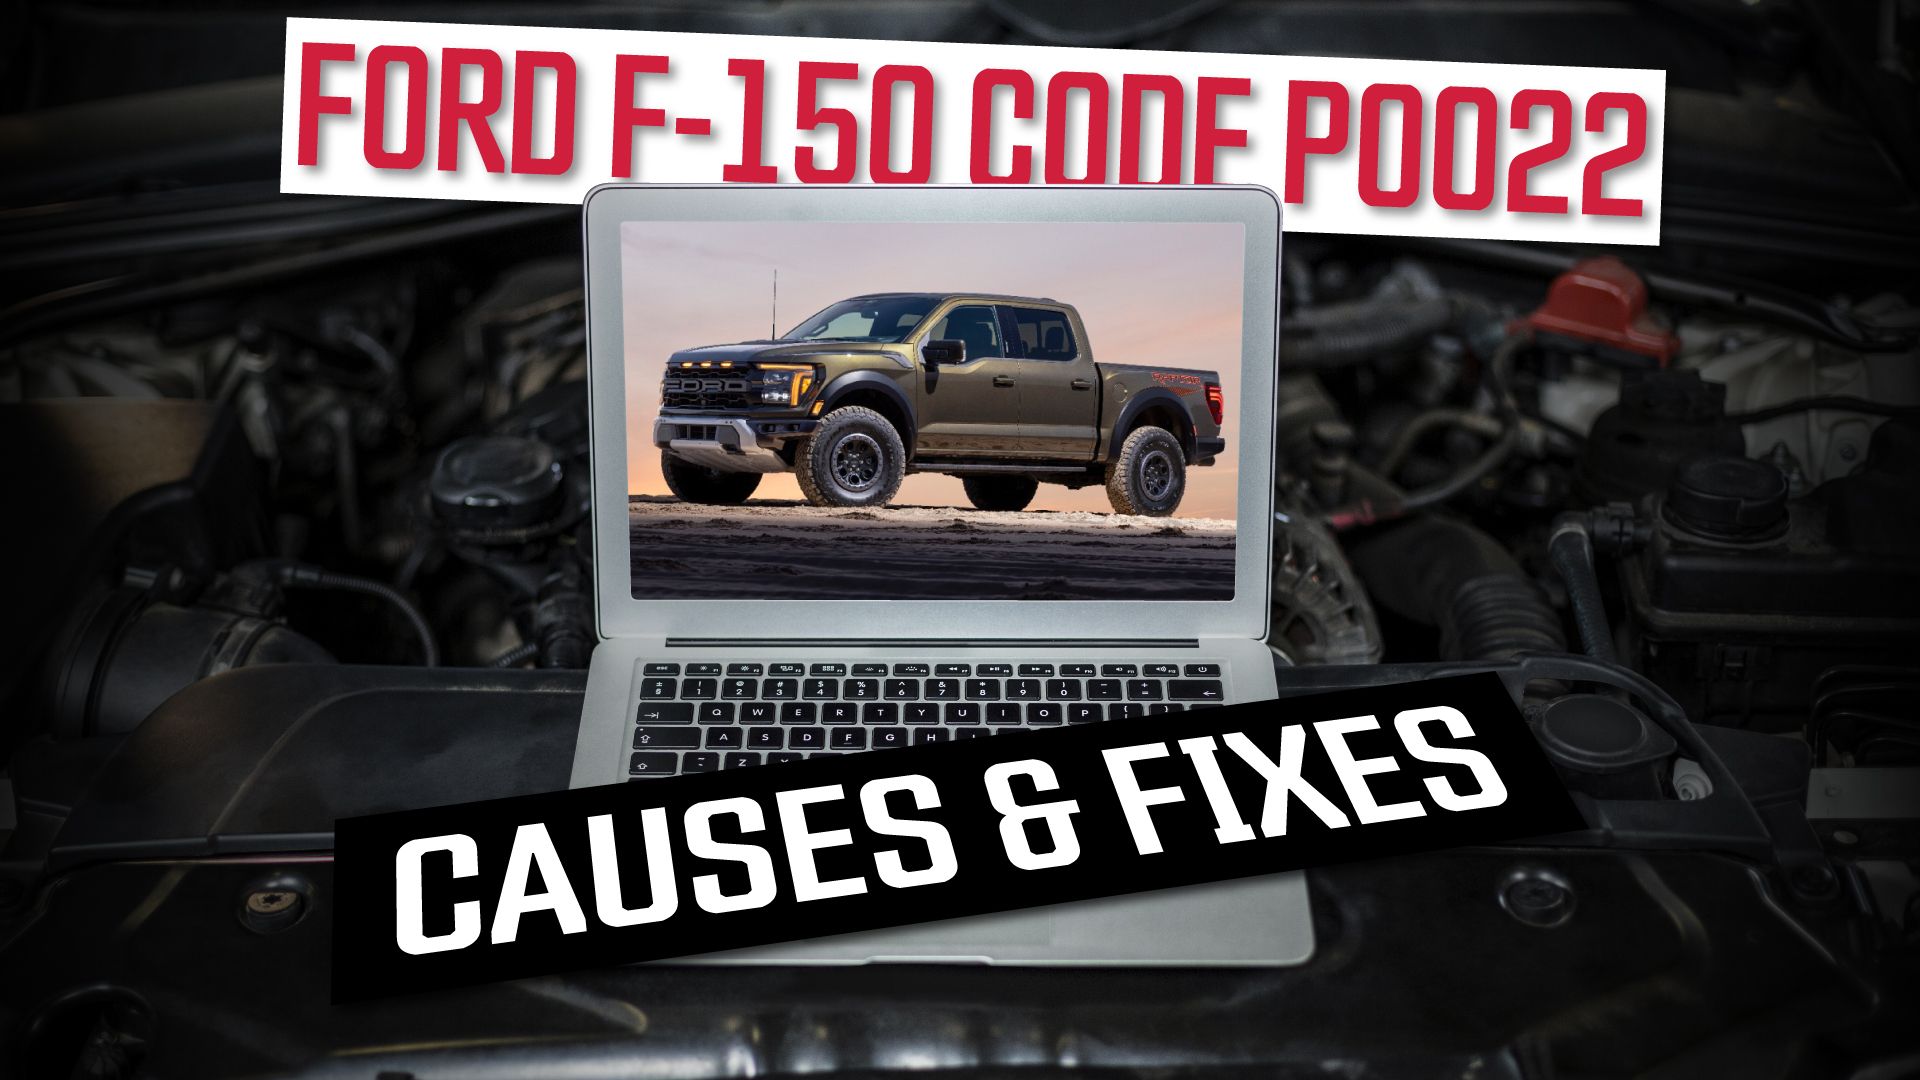 P0022 Ford F-150 Error